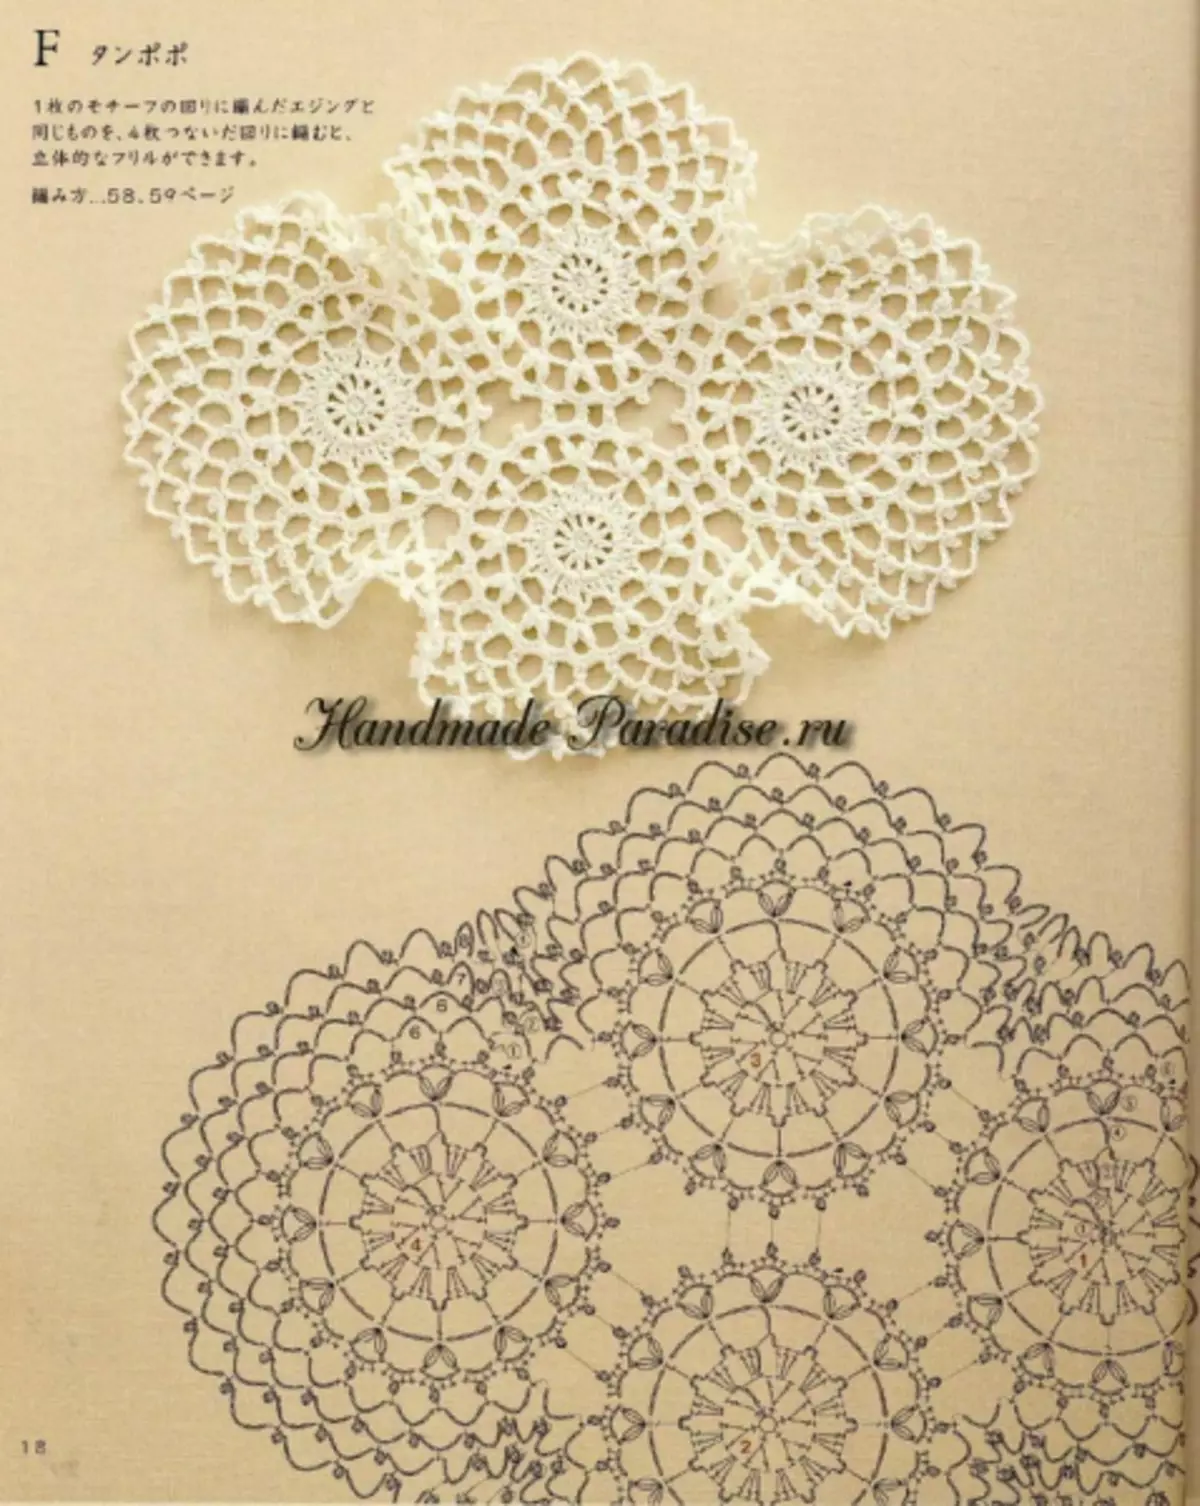 Διακοσμητικό βελονάκι. Ιαπωνικό περιοδικό